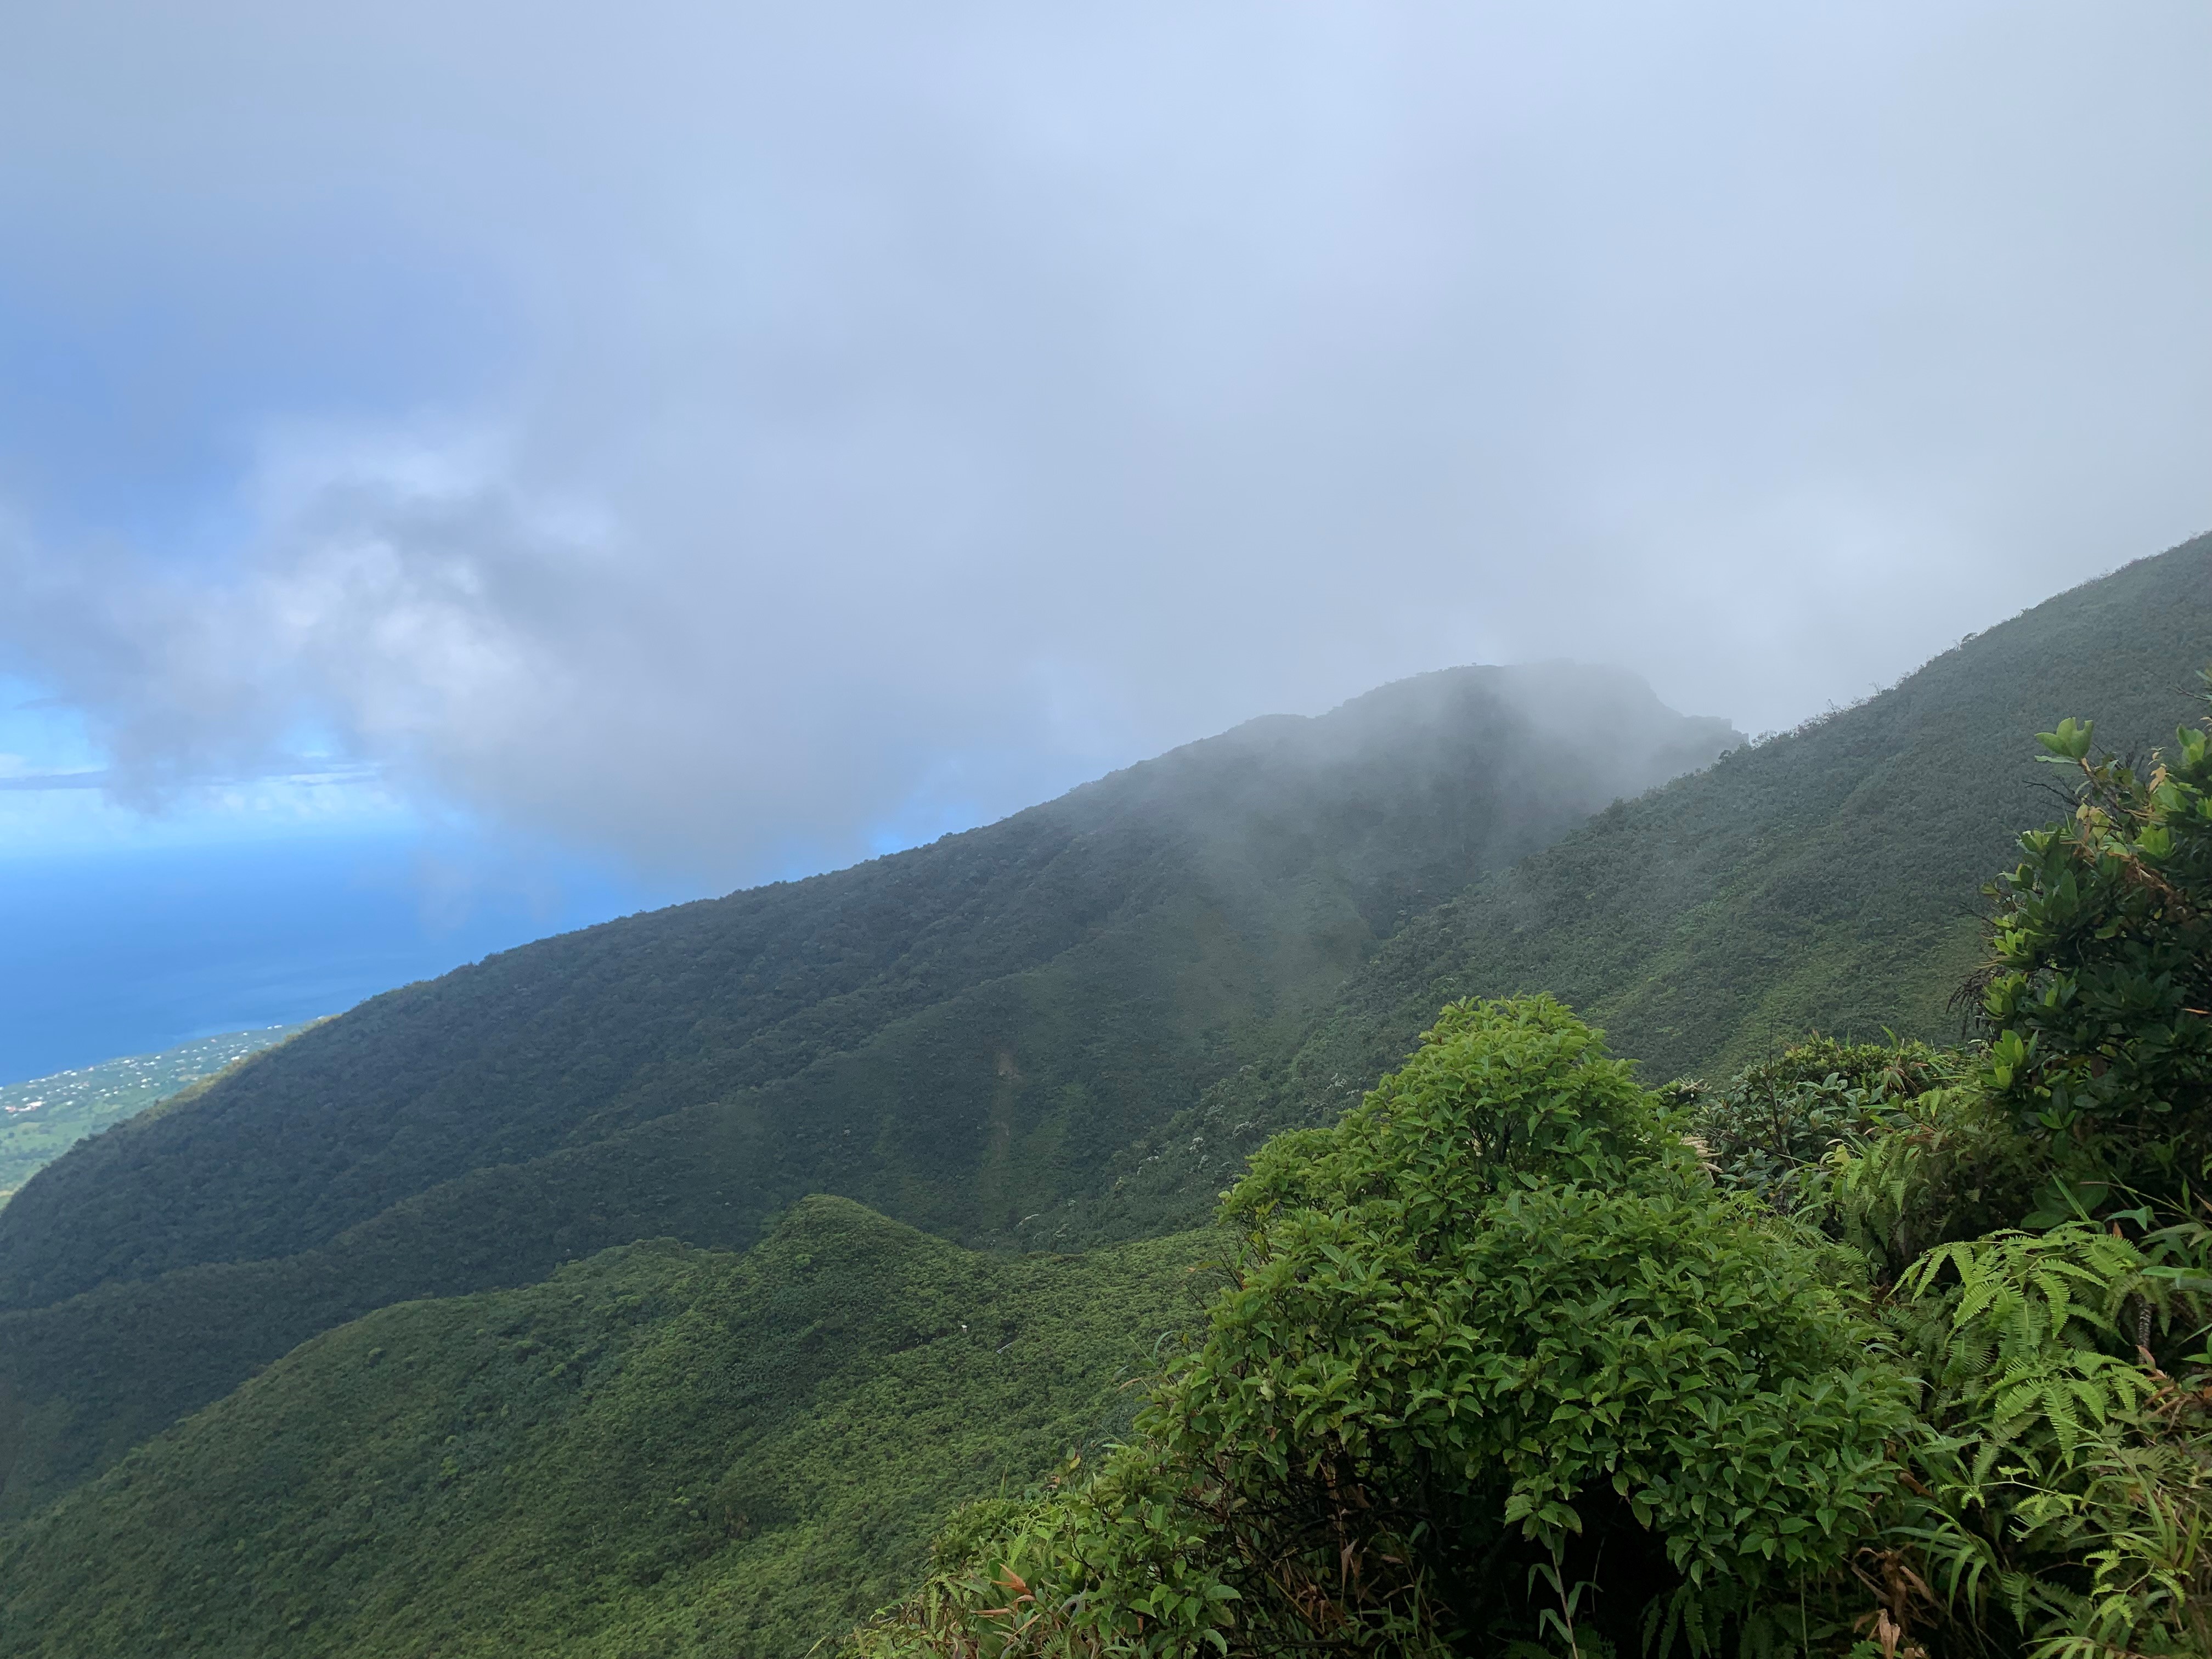     La Guadeloupe et la Martinique parmi les meilleures destinations « nature » au Monde

